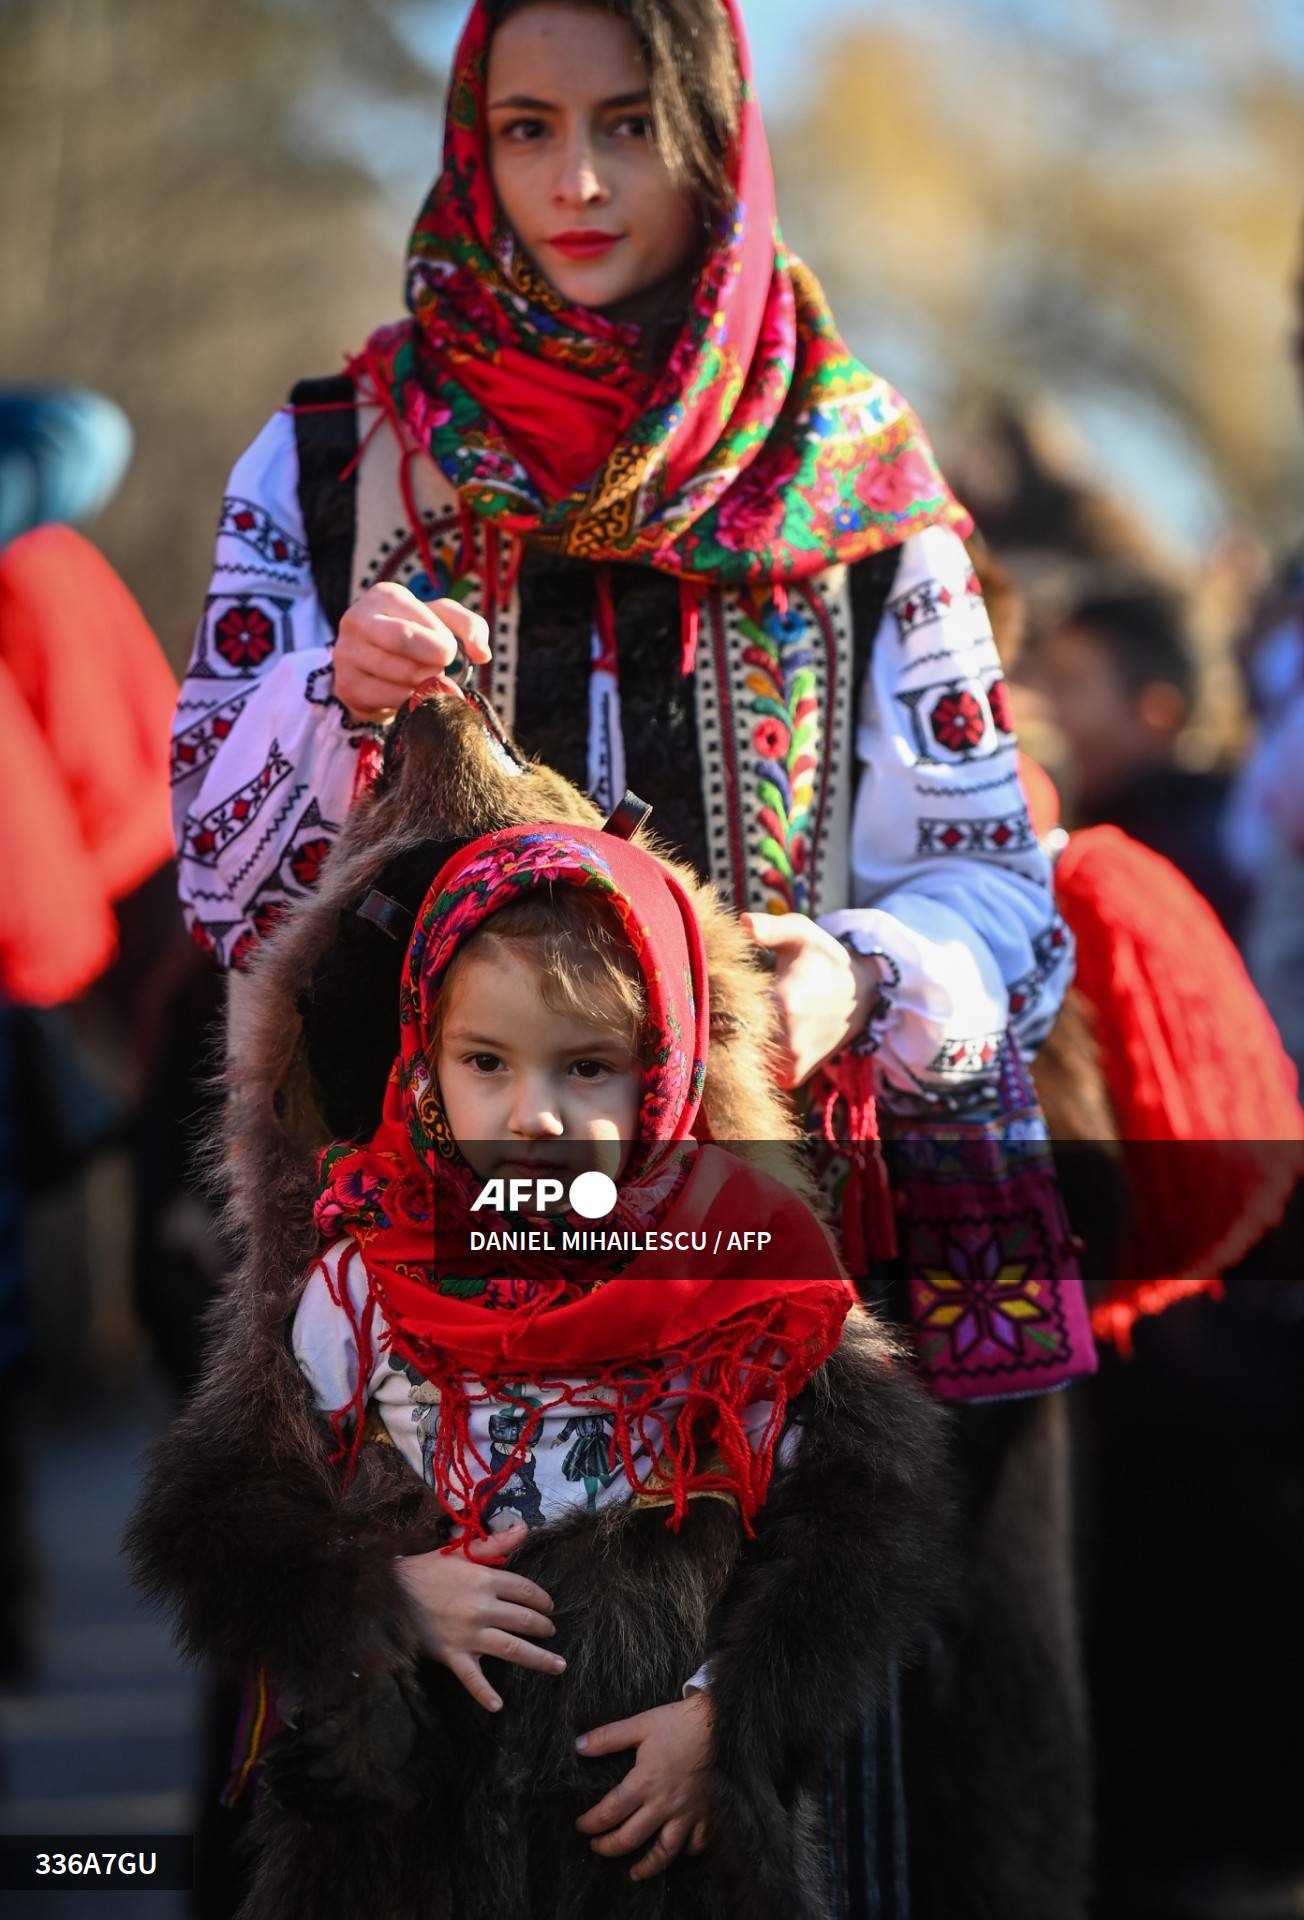 Một người phụ nữ và em bé mặc trang phục da gấu tham dự cuộc diễu hành Bearskin Parade ở Comanesti, Romania ngày 30.12. Ảnh: AFP